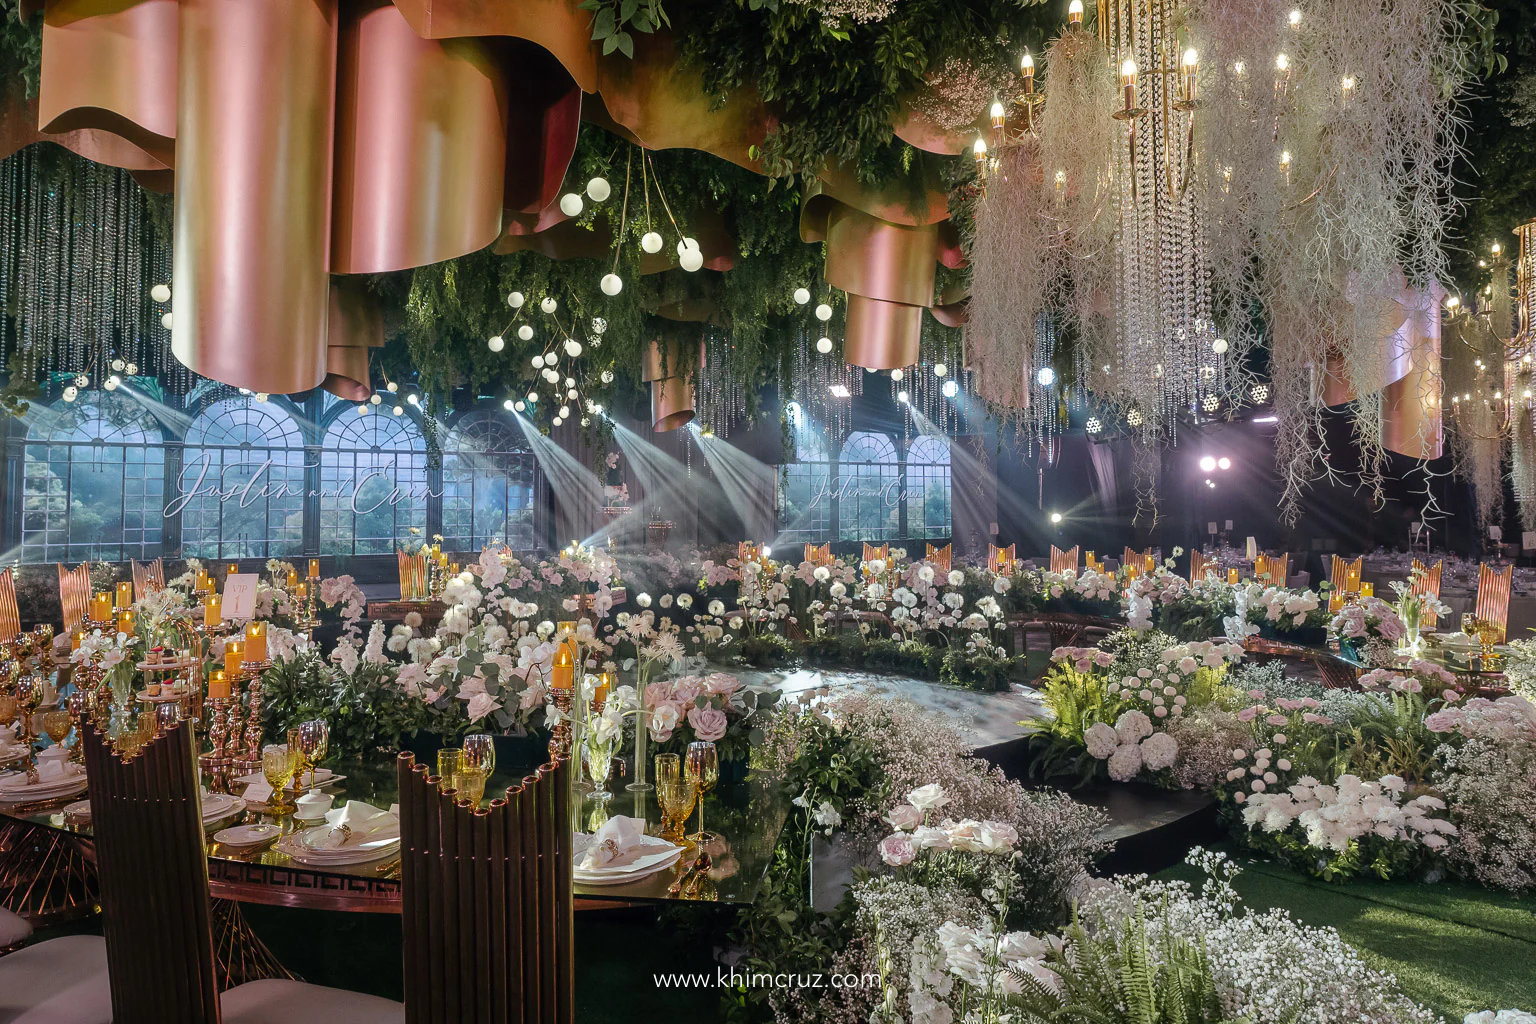 a dreamy ambiance conservatory-feel wedding reception by wedding designer Khim Cruz